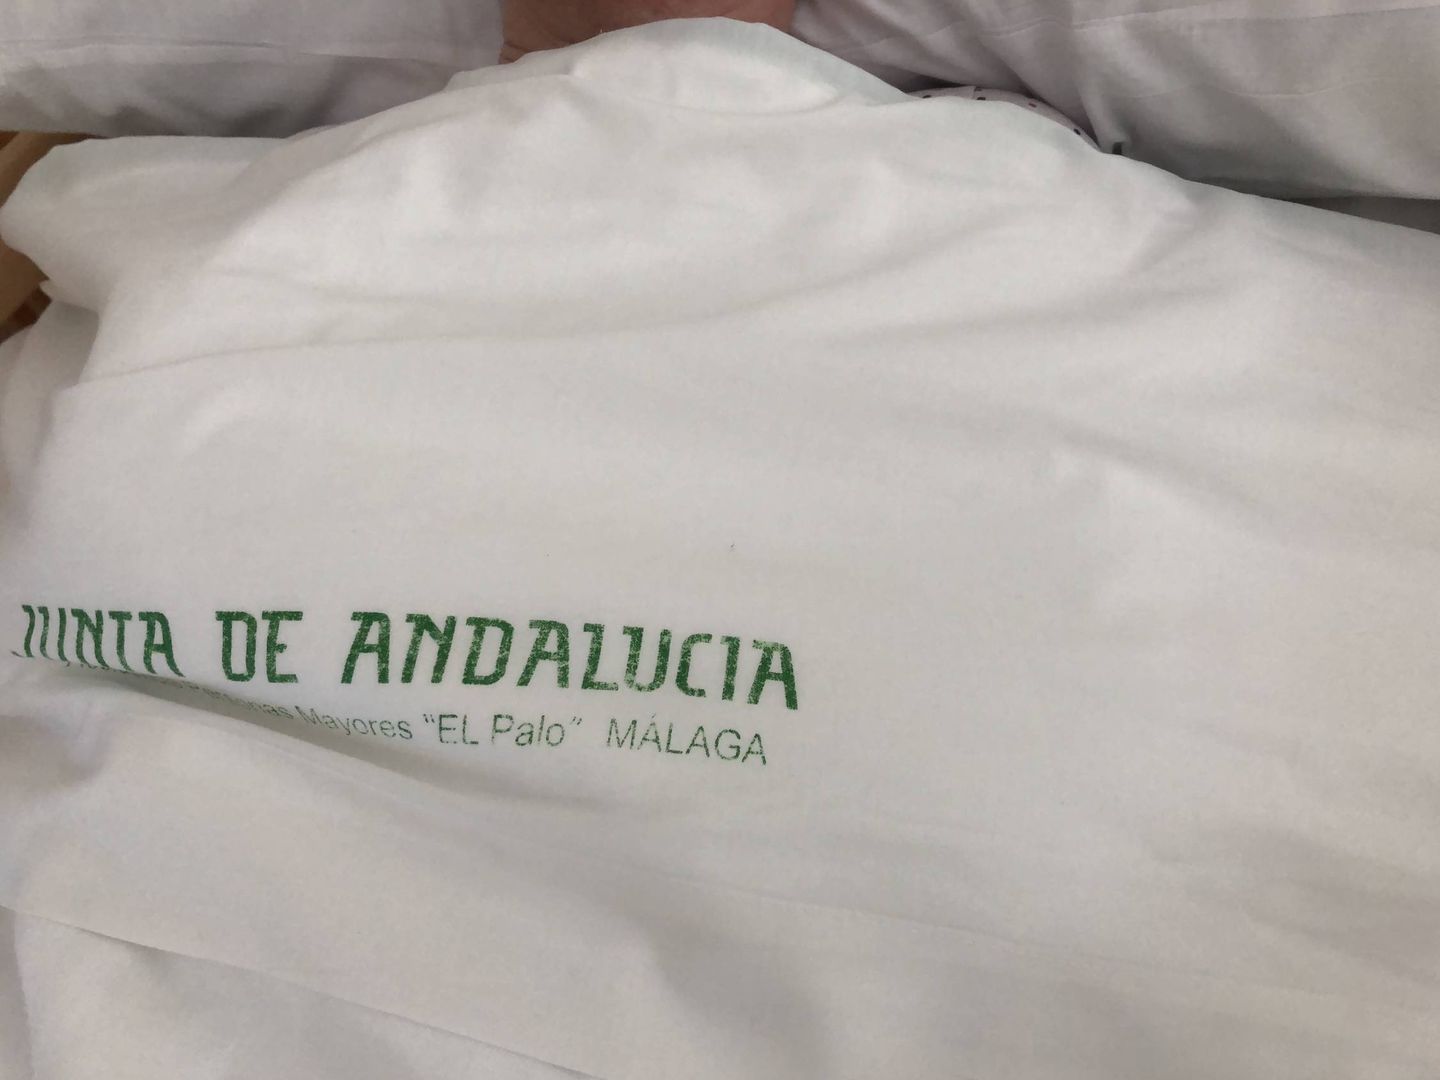 Imagen parcial de la cama de una residente. (Agustín Rivera)